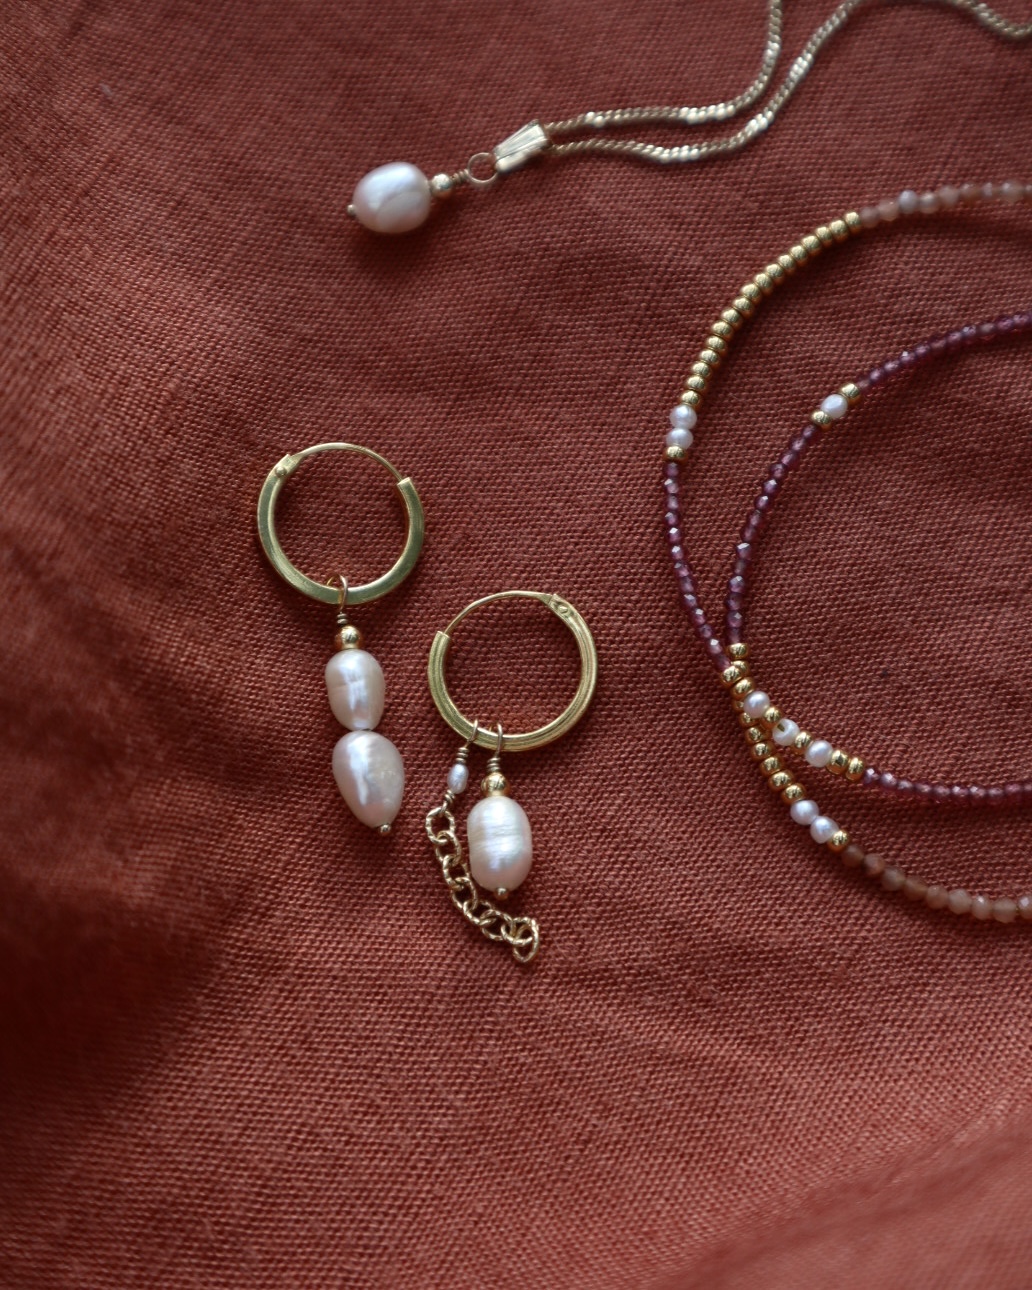 Pareloorbellen, parelketting en een wikkelarmband met edelstenen.